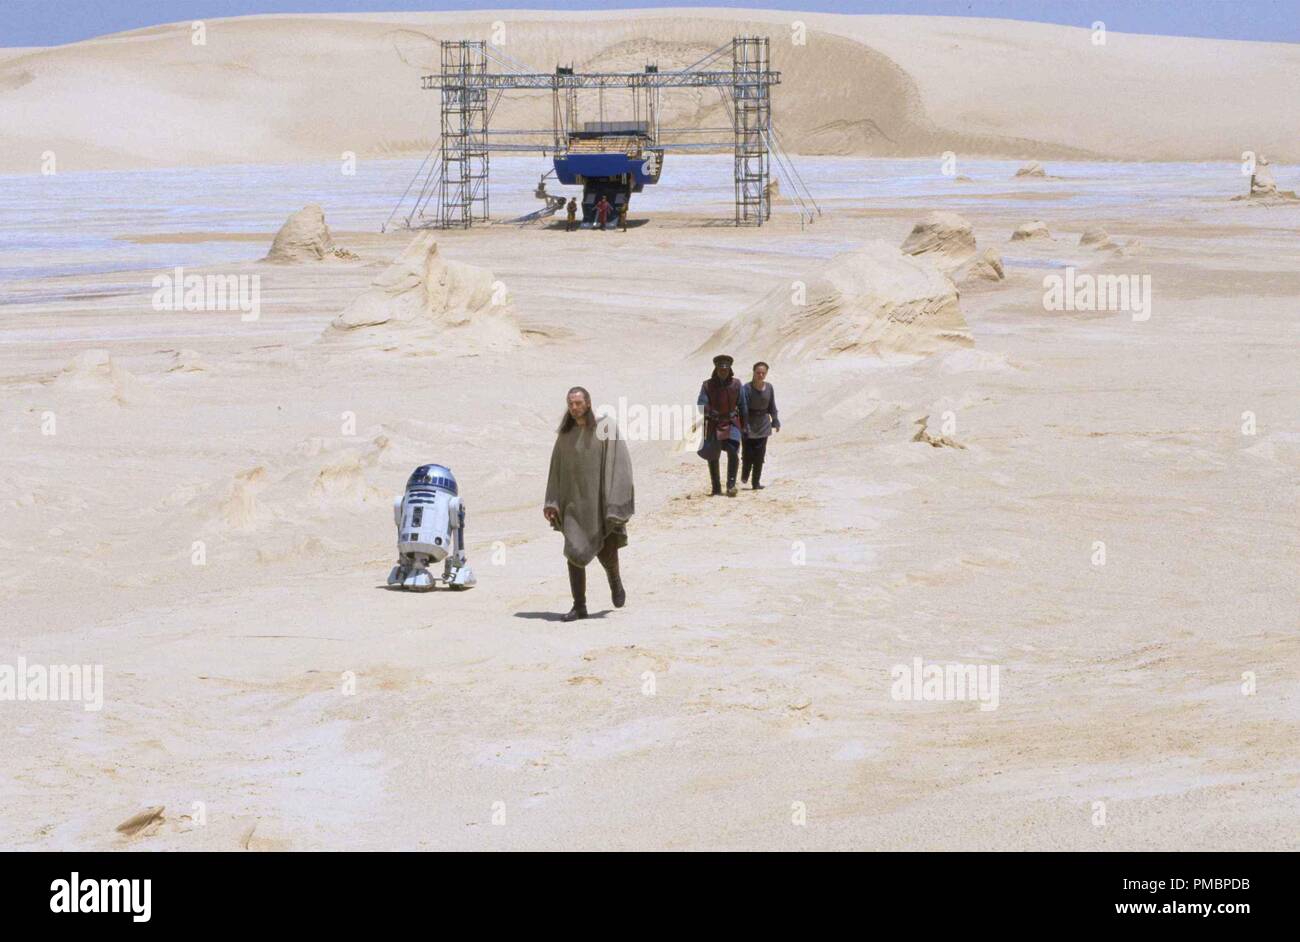 Liam Neeson nimmt die Tatooine trek Sequenz in Tunesien in "Star Wars Episode I: Die Dunkle Bedrohung" (1999) Datei Referenz # 32603 436 THA Stockfoto